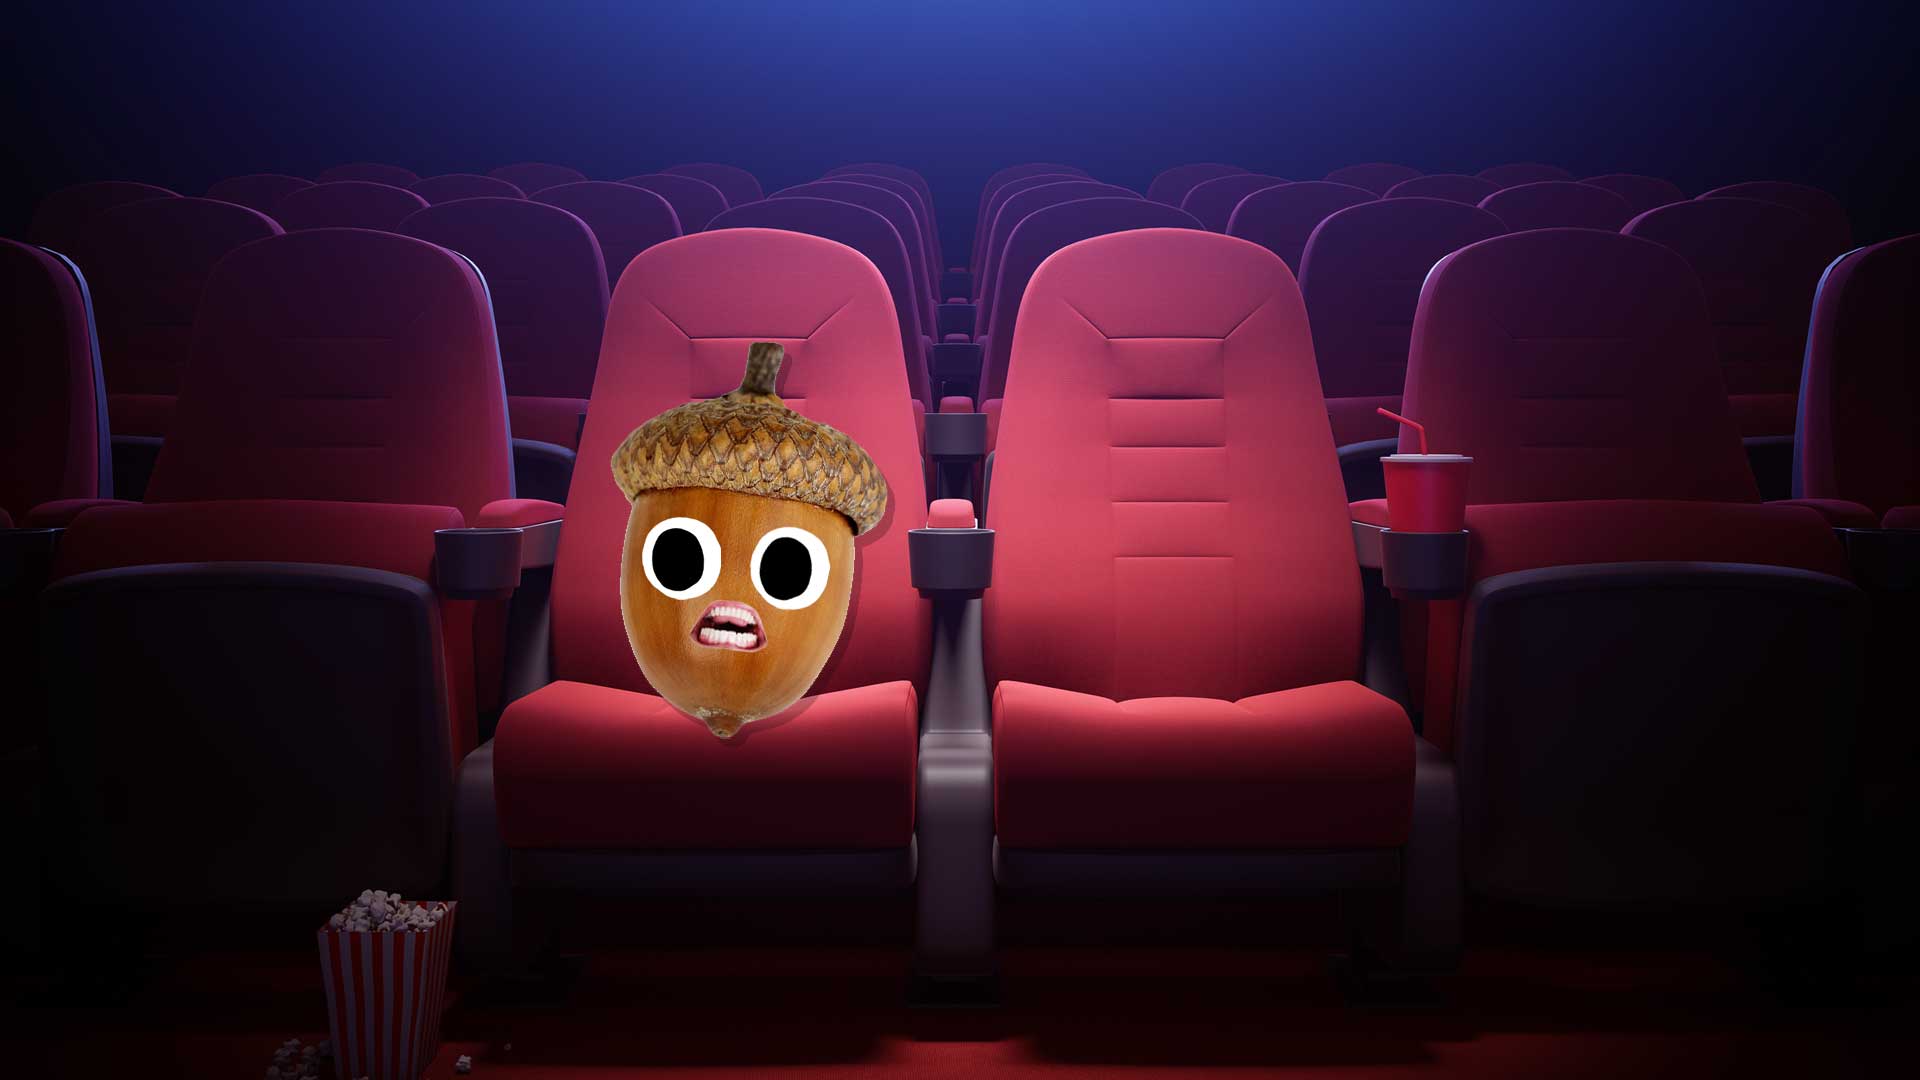 An acorn on a cinema seat